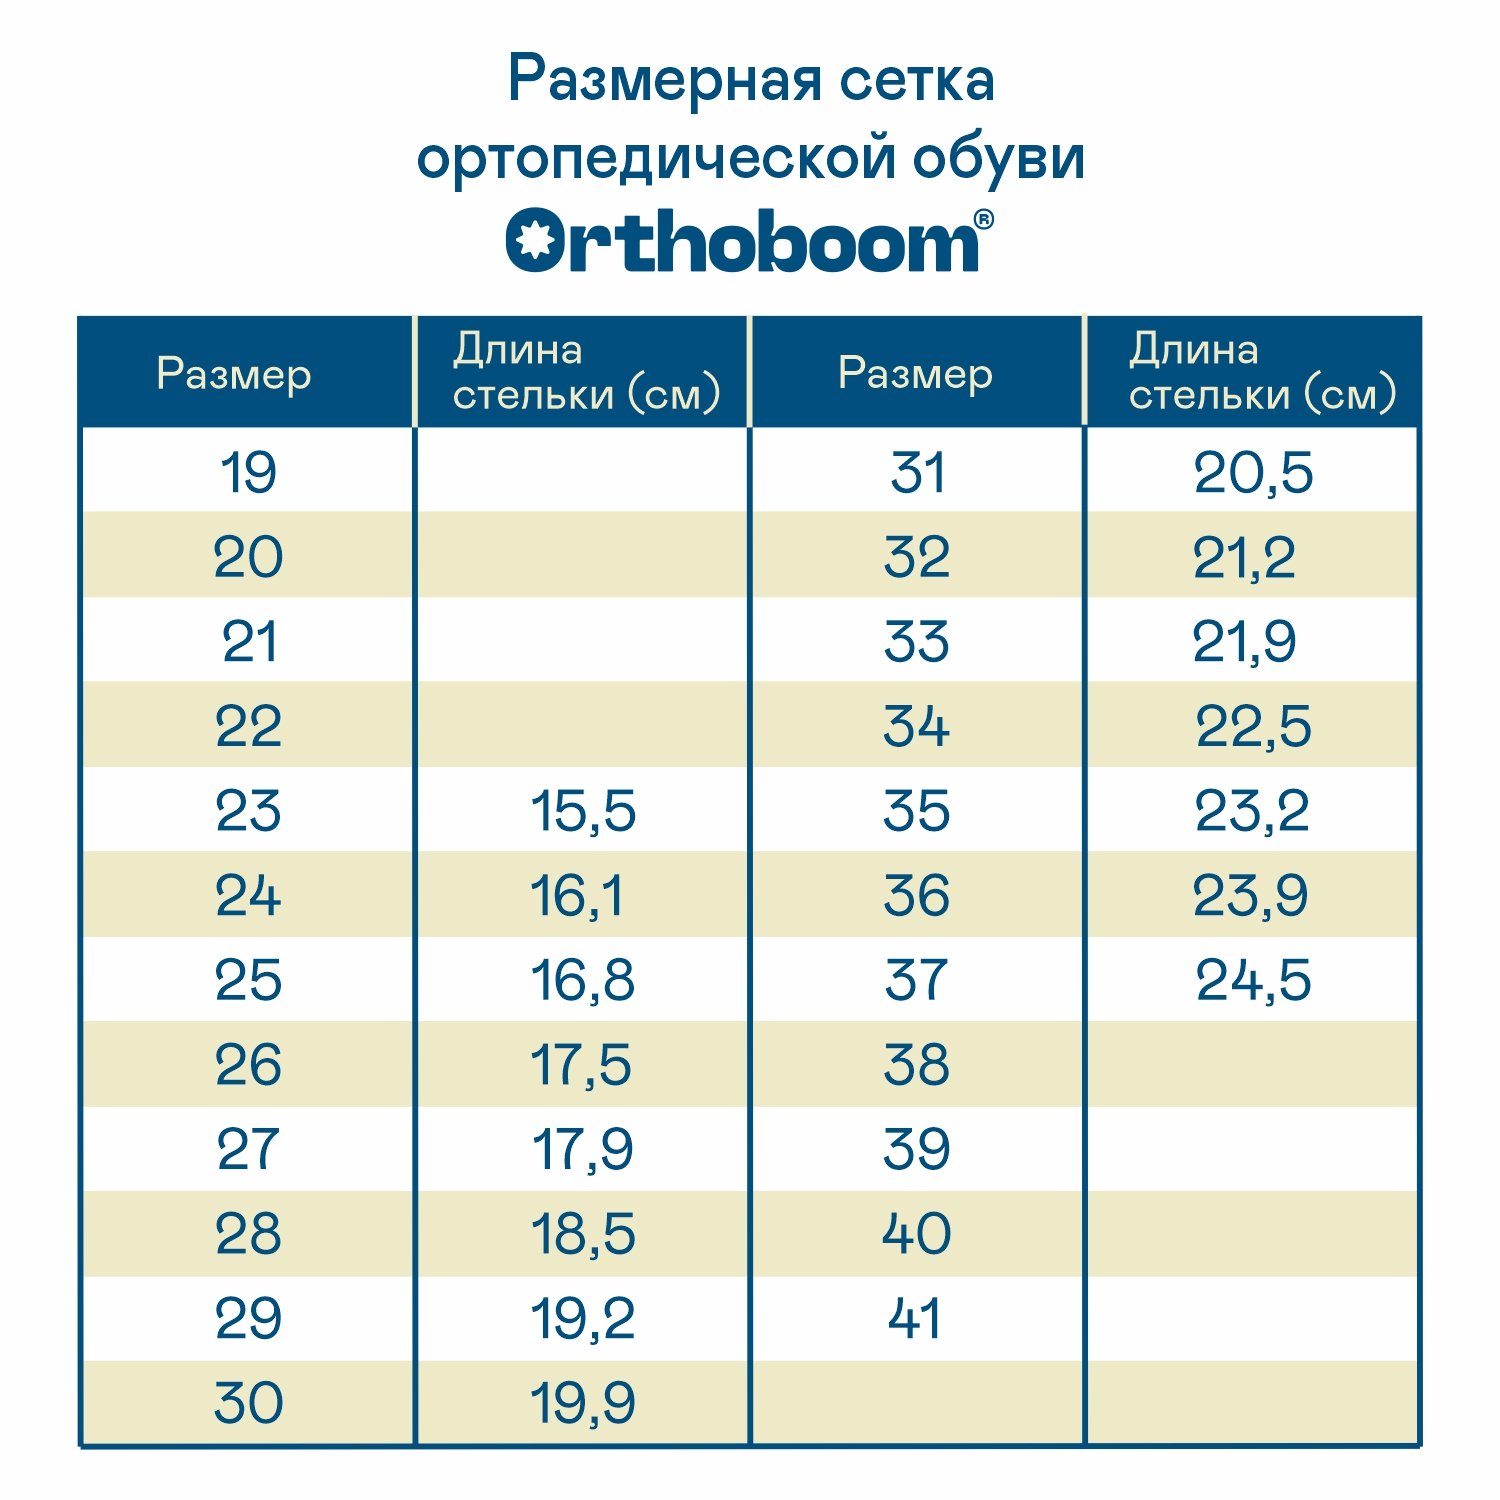 Детские сандалии ORTHOBOOM 71587-33 синий-сапфировый-коричневый